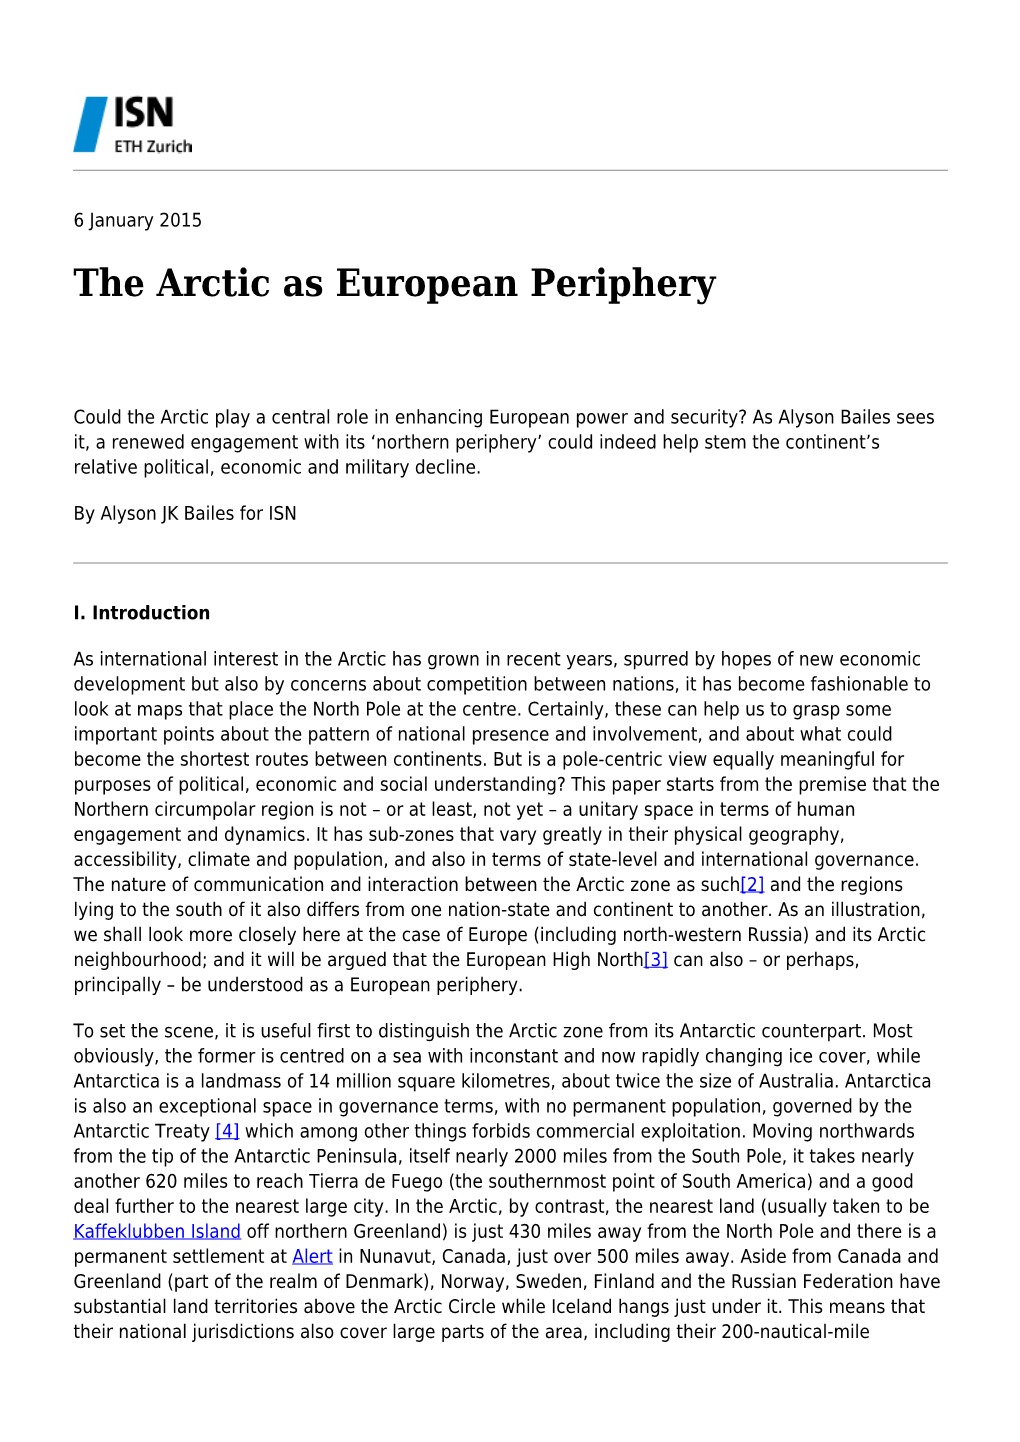 The Arctic As European Periphery